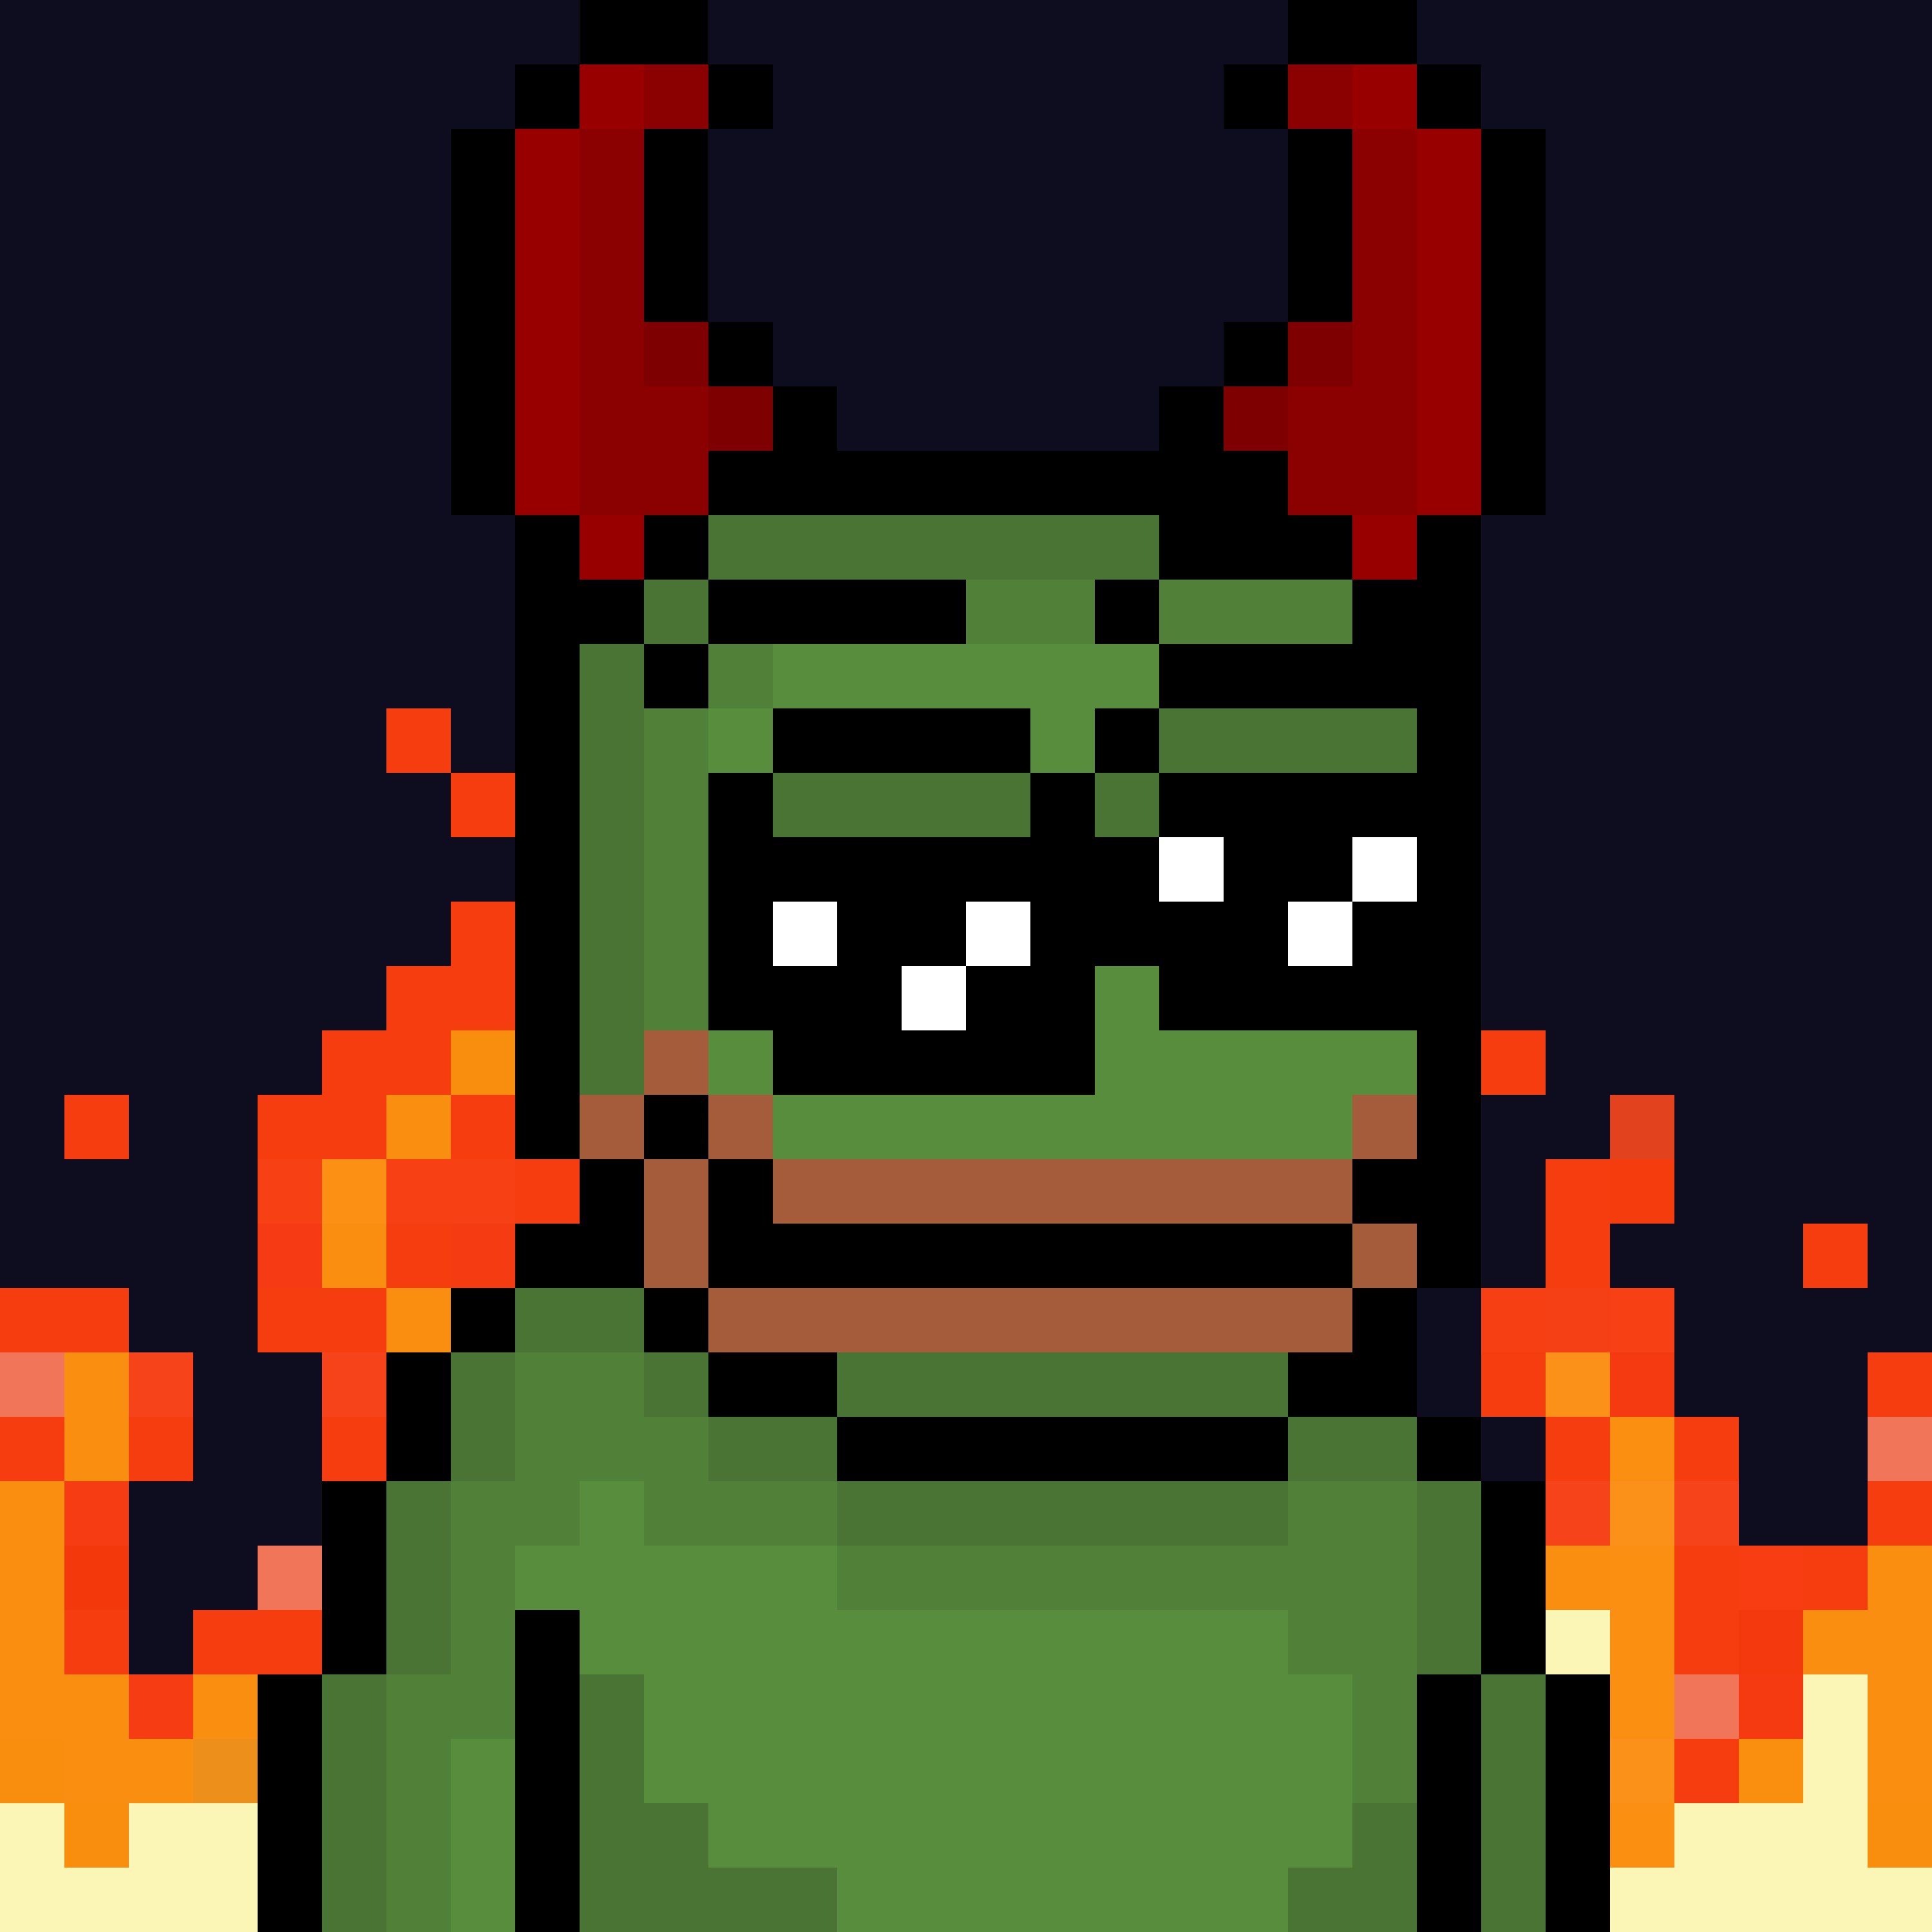 The Pepe Devil